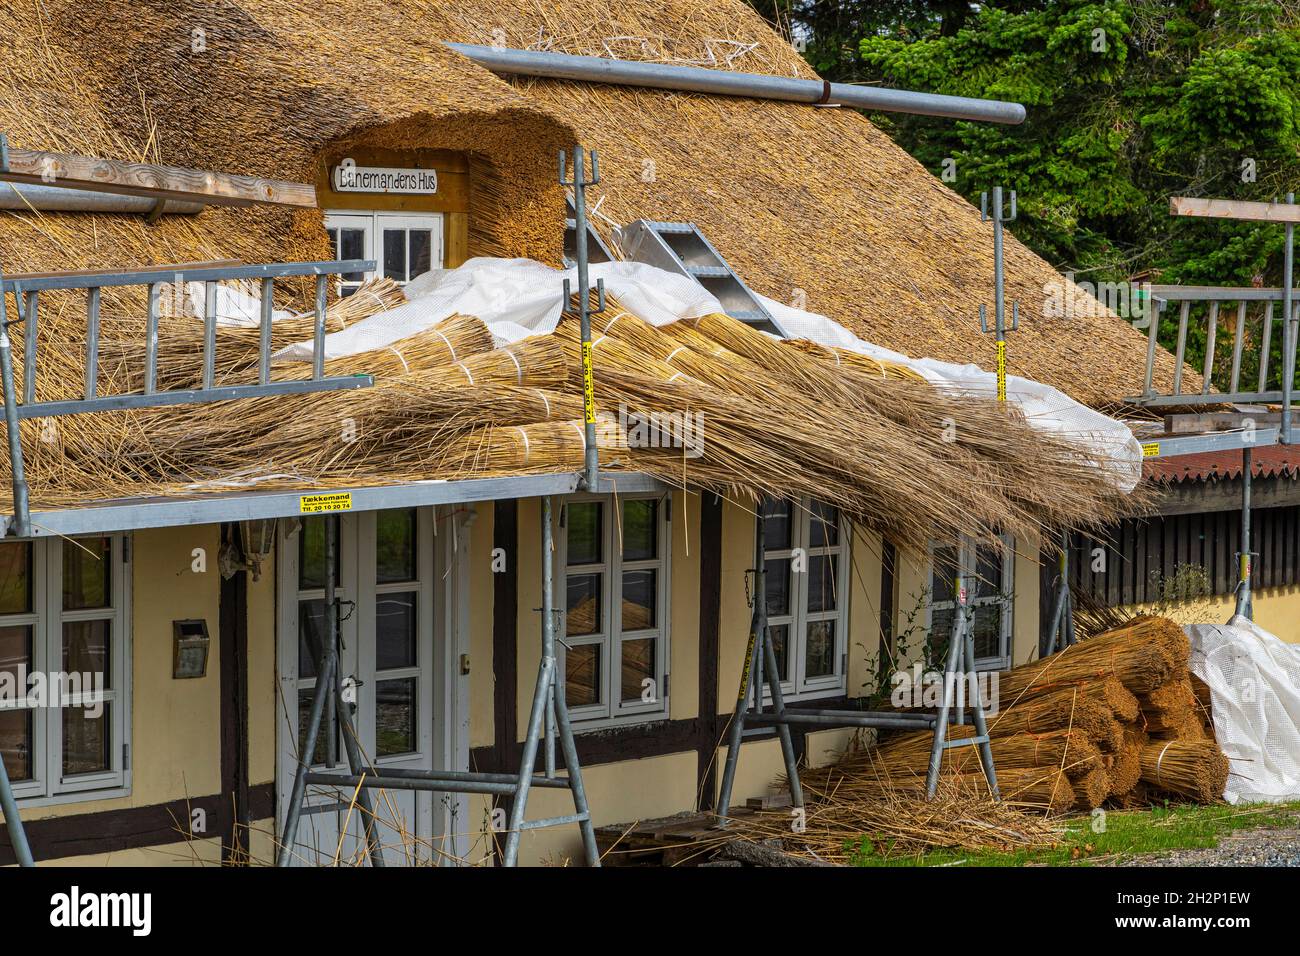 Tipica casa danese gialla. Tradizionale riparazione e costruzione del tetto con paglia e legno. Danimarca, Europa Foto Stock